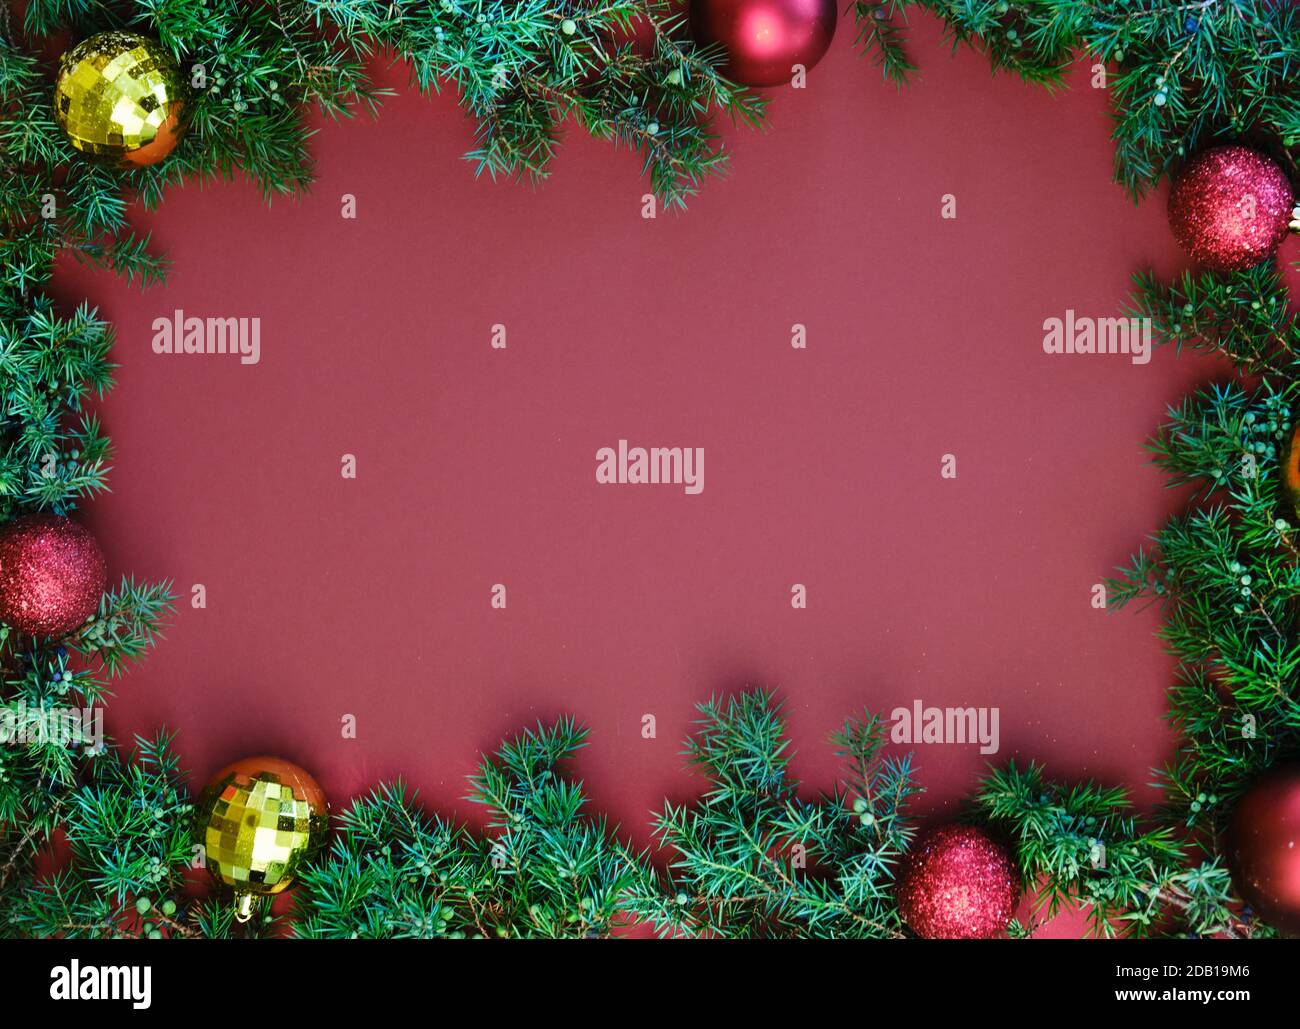 Arrière-plan festif avec espace de copie pour le texte. Bordure de Noël de branches et de boules de sapin. Flat lay, vue de dessus Banque D'Images